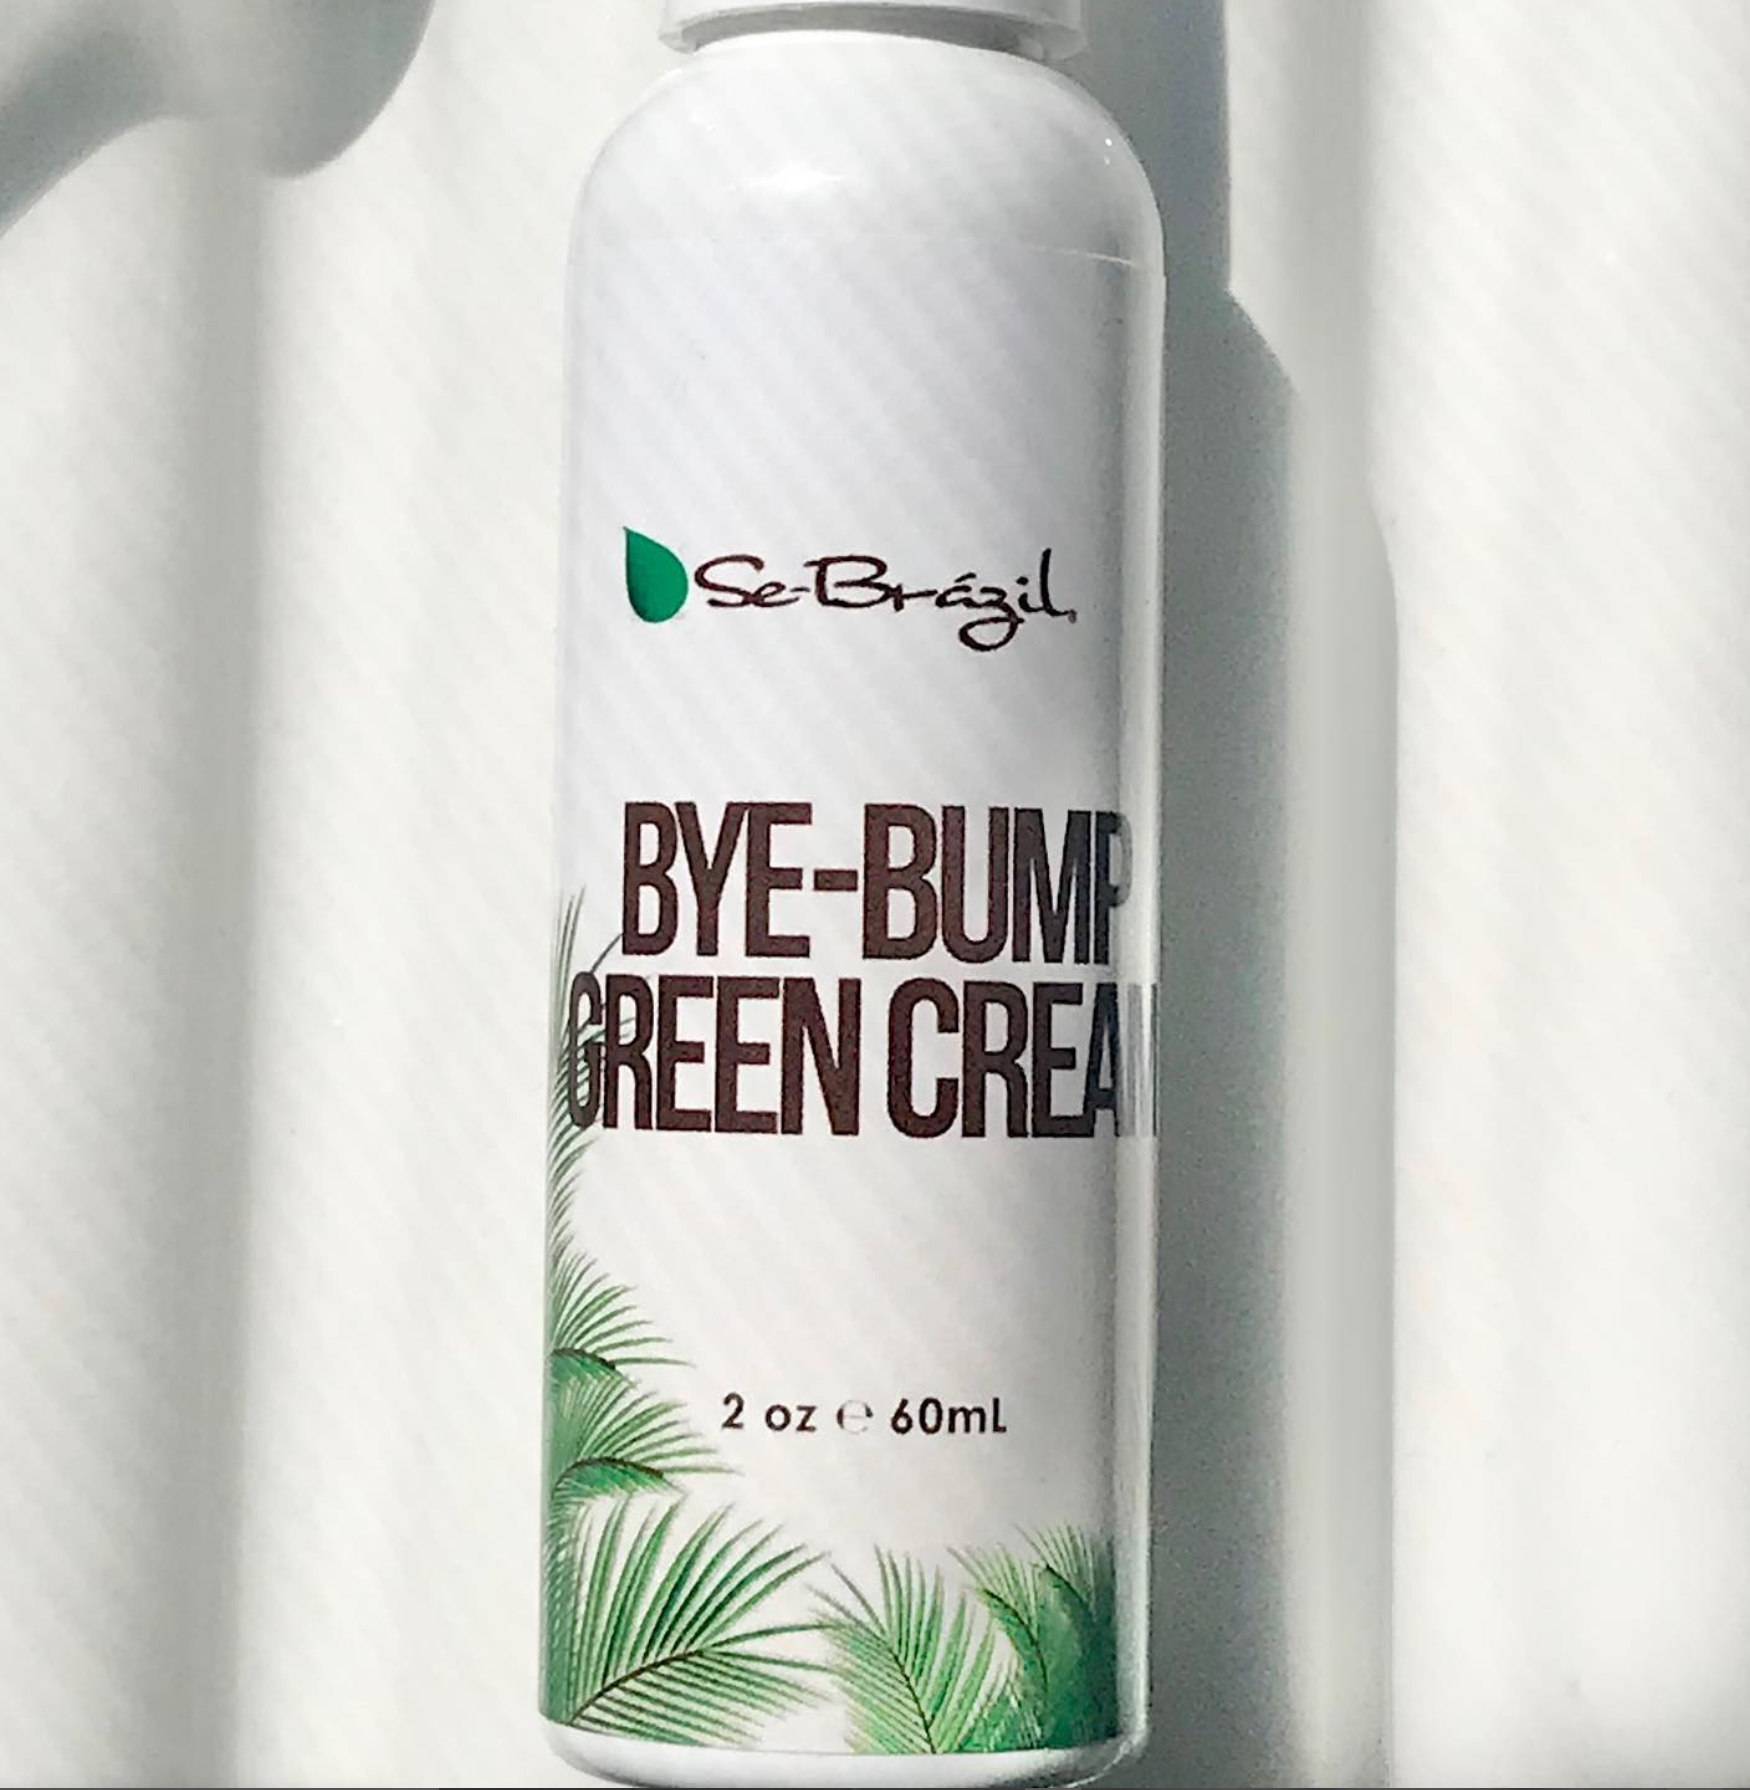 Se-Brazil Bye Bump Green Cream